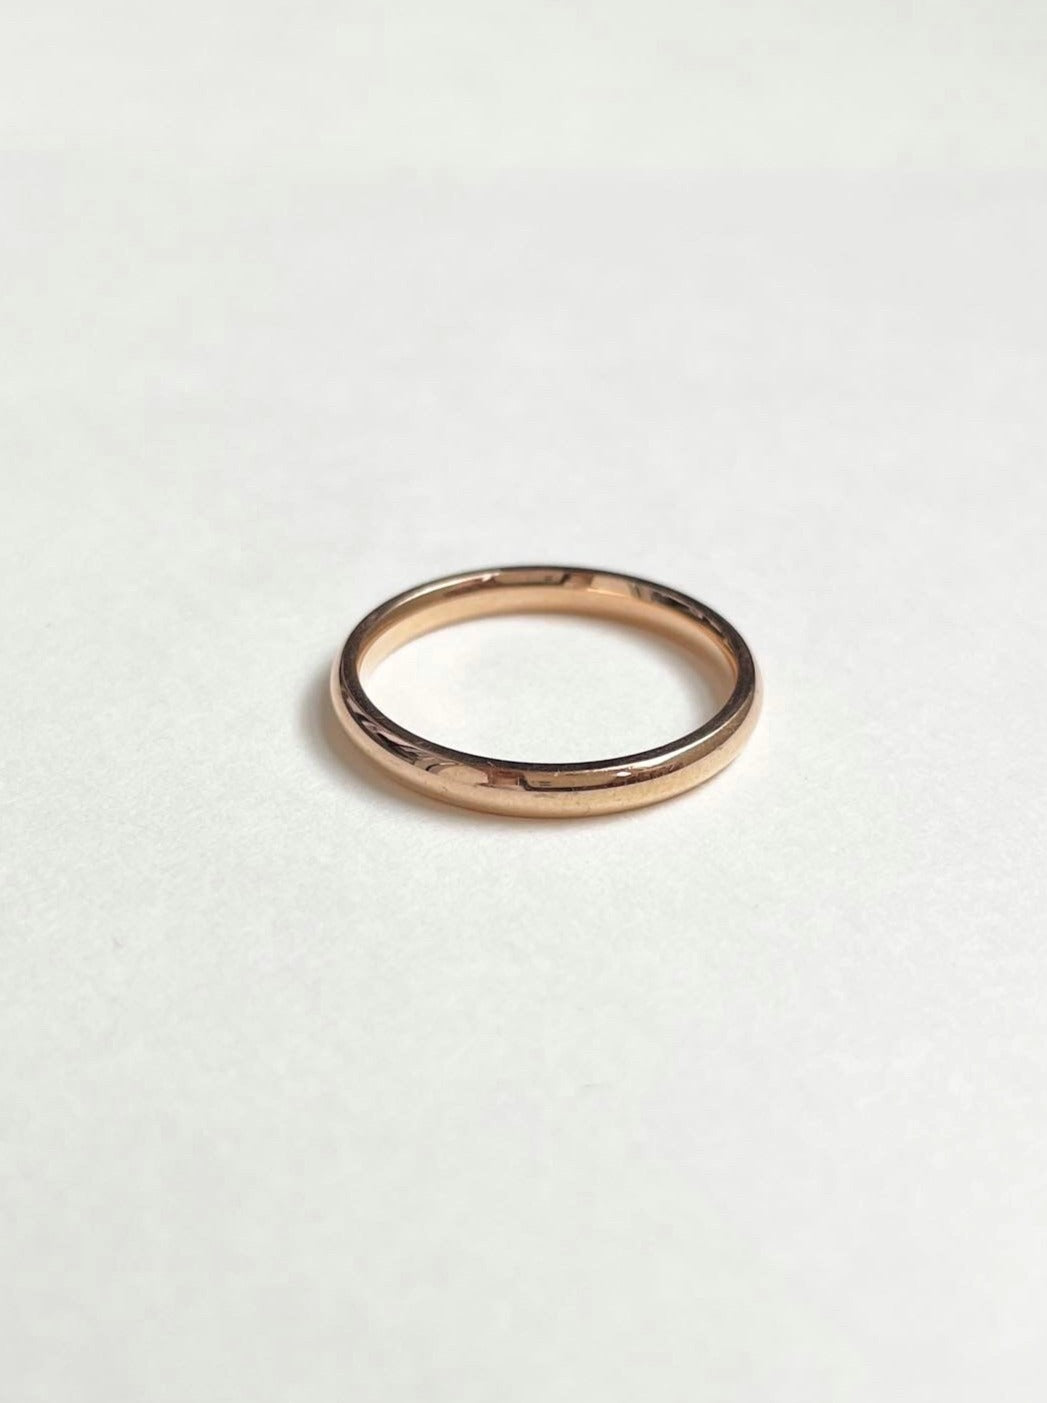 【限定カラー】surgical ring / pink gold / 316L(金属アレルギー対応)